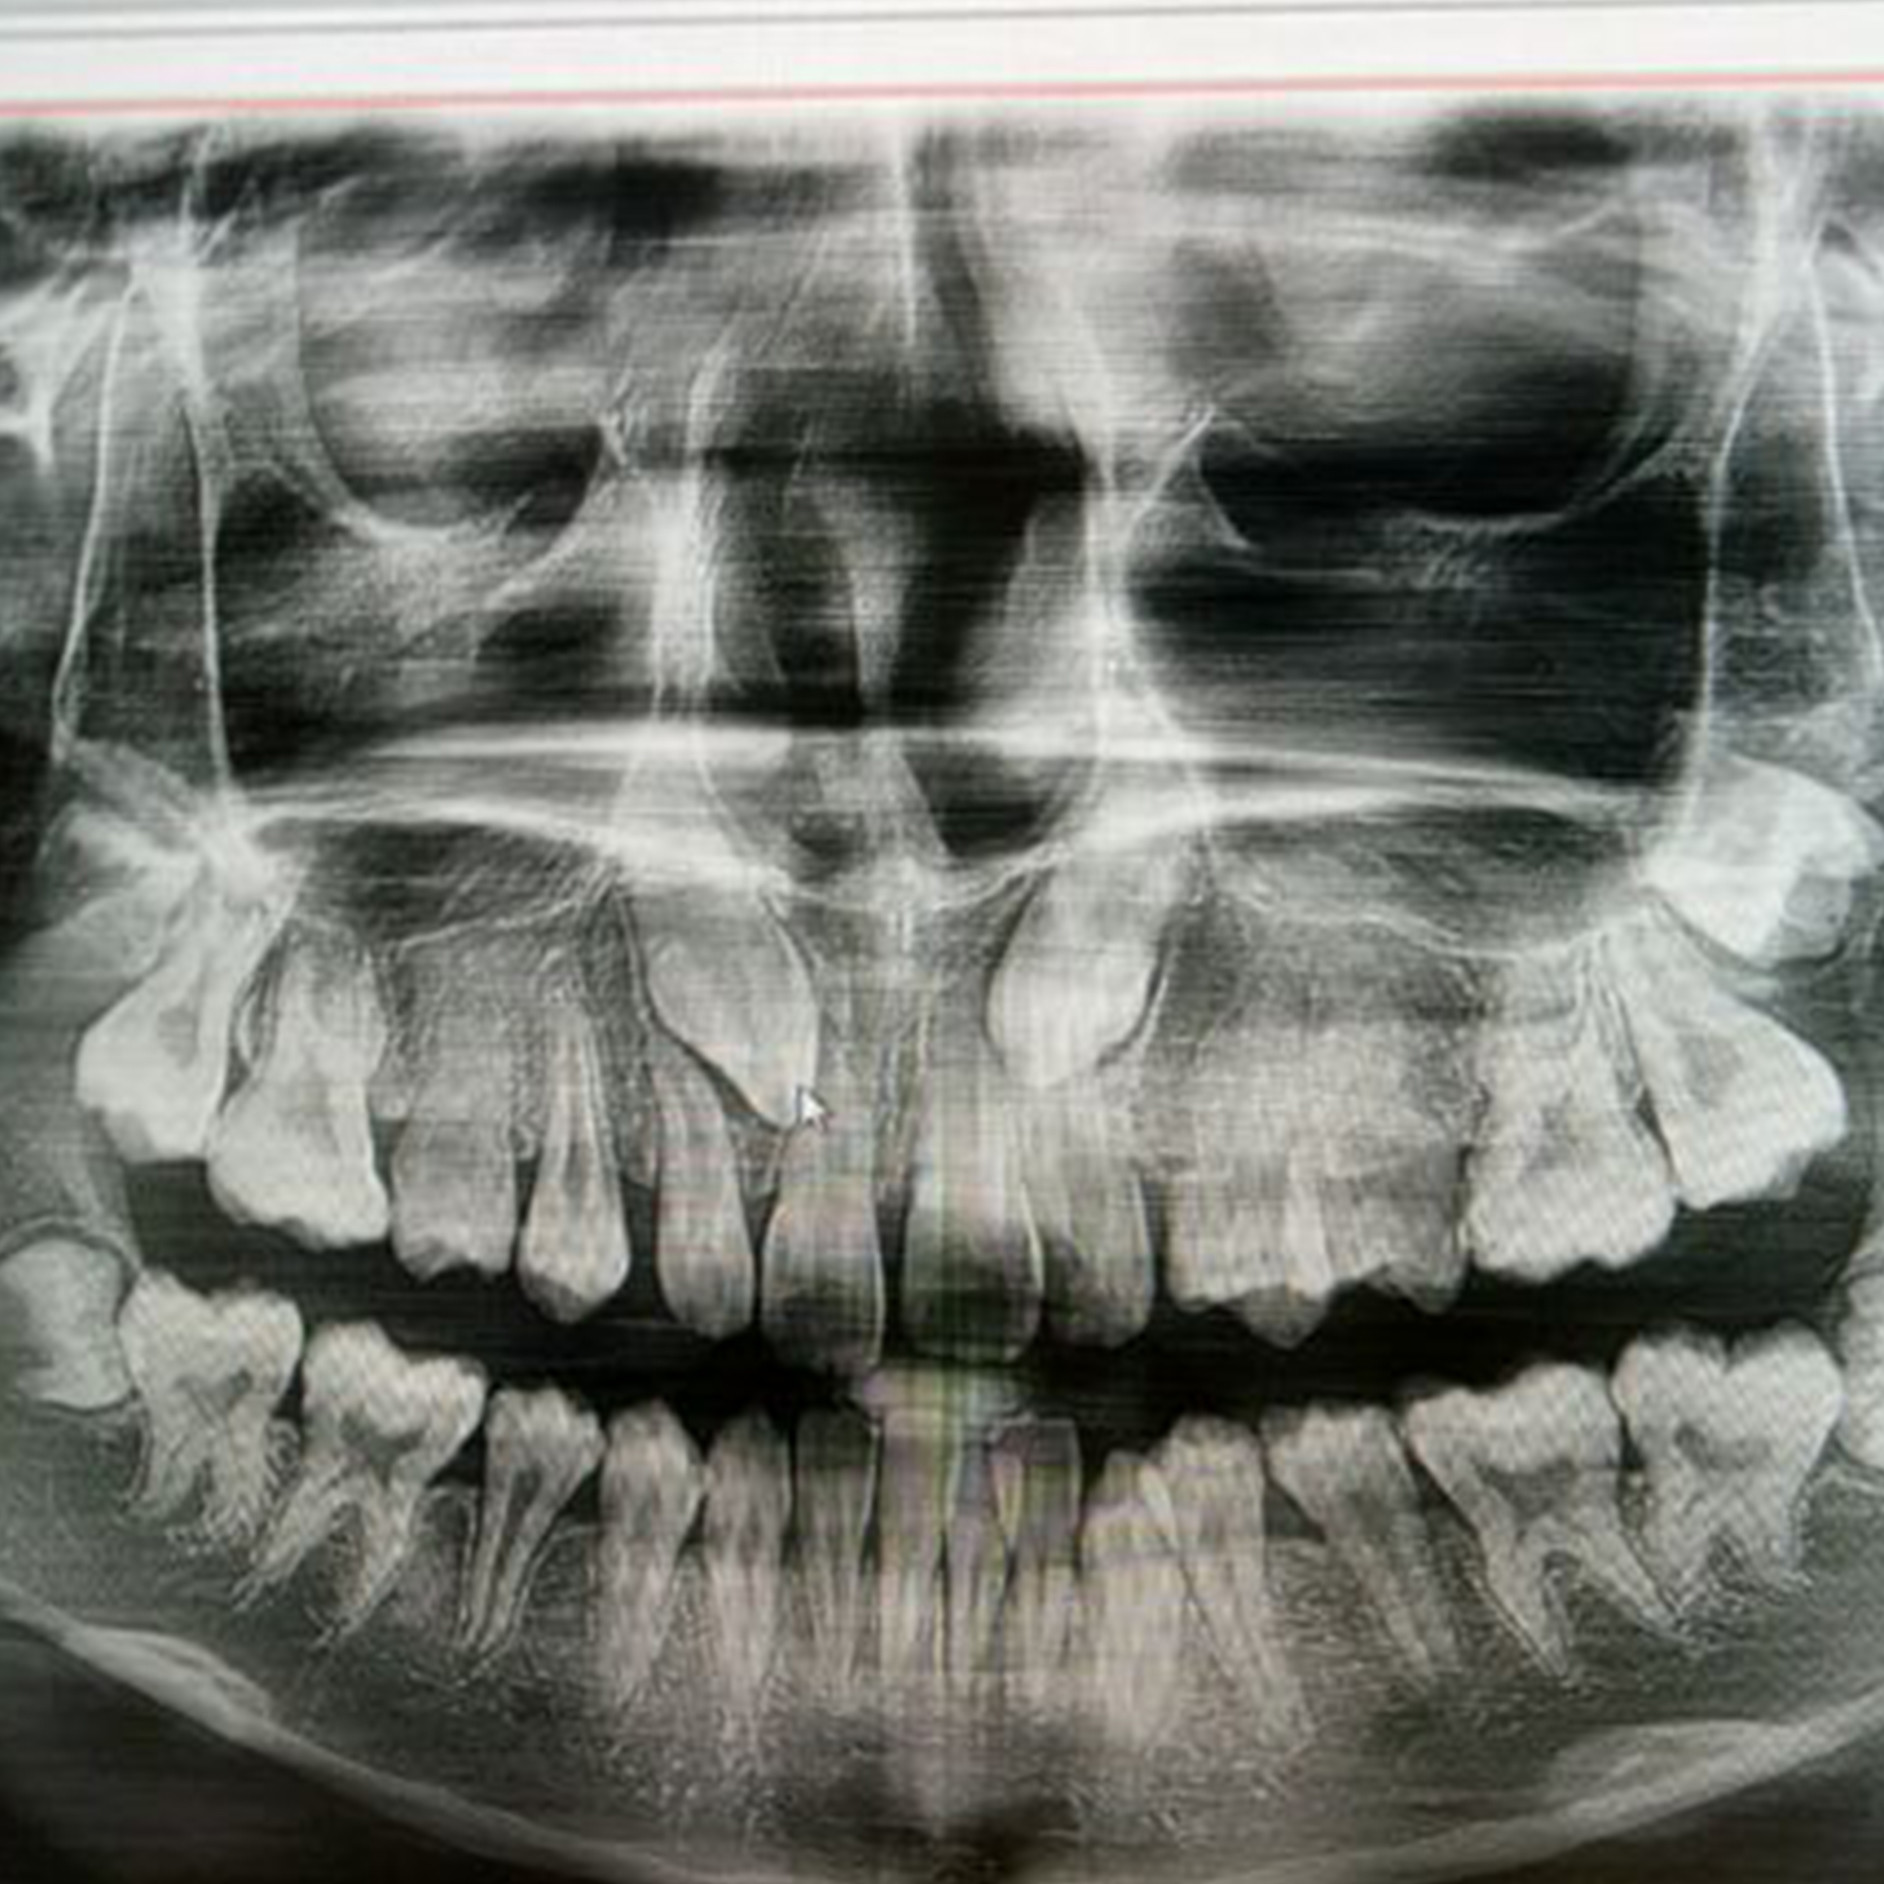 顾客 23 岁,牙齿有点前凸,中线偏移,牙列不整齐;  通过 ct 片观察